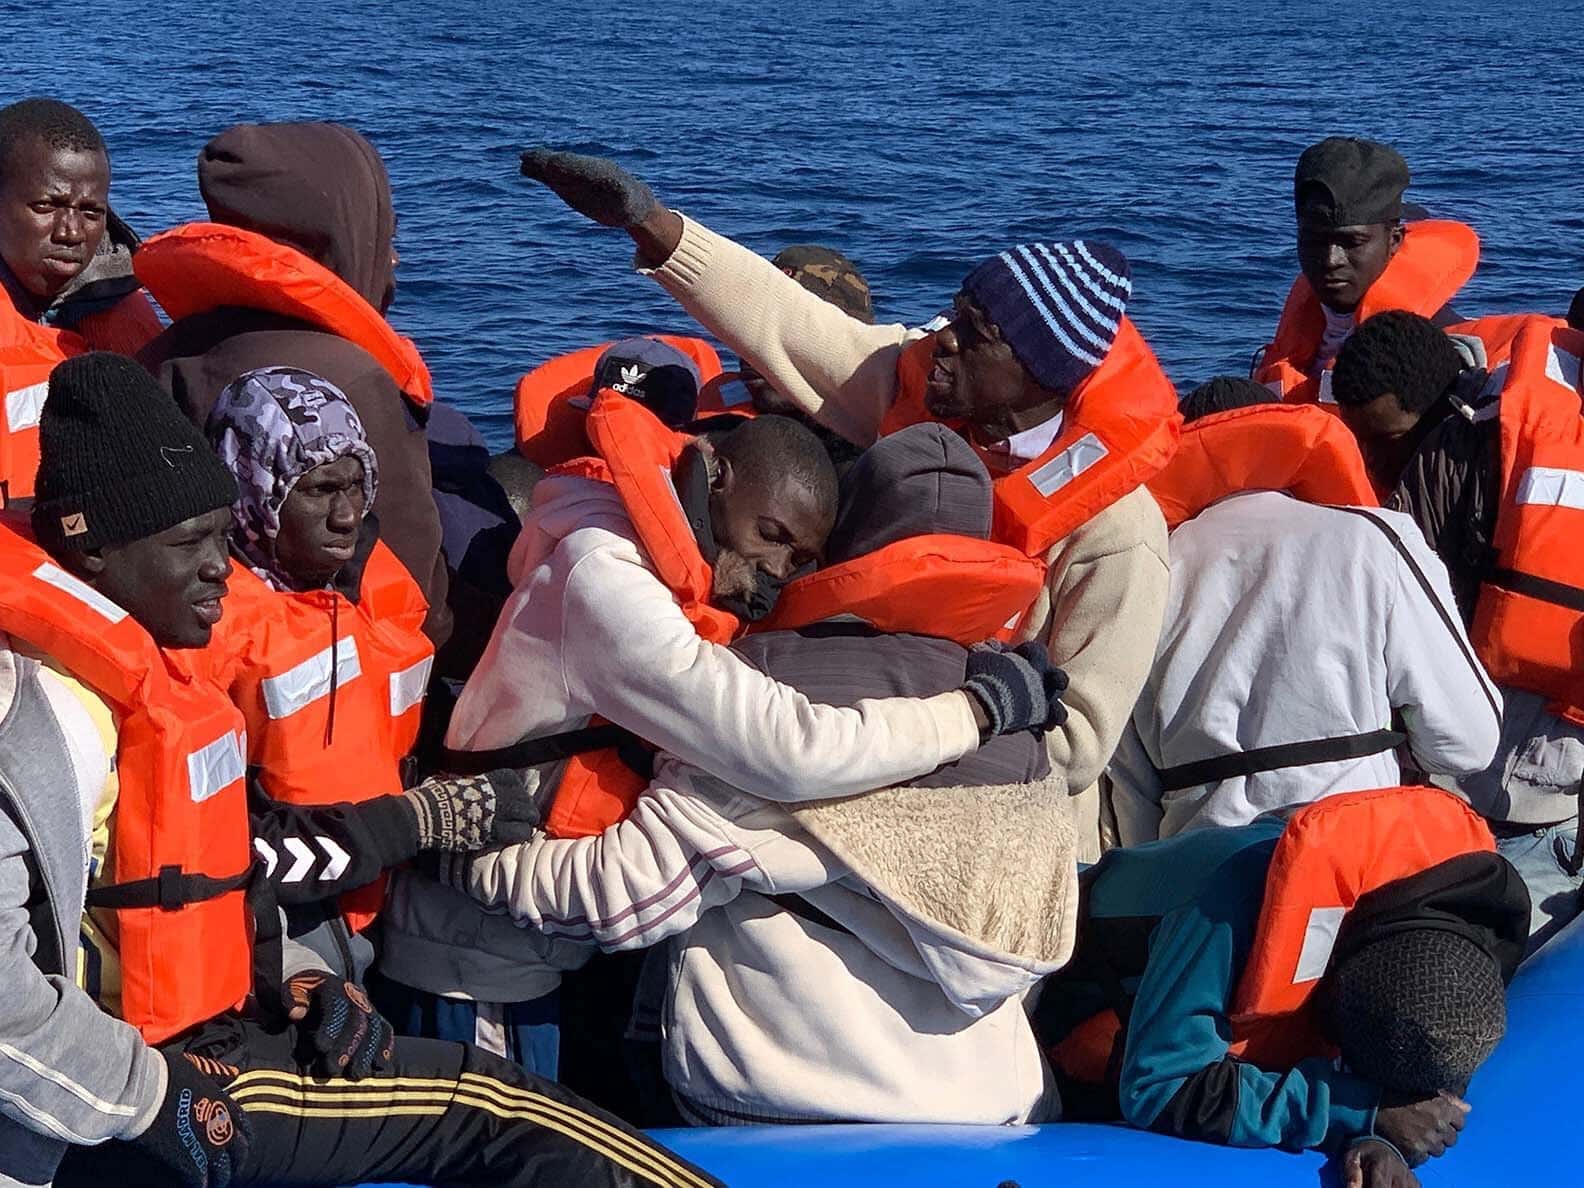 Неоказание помощи терпящим бедствие. Мигранты в Средиземном море. Смерть мигрантов в Средиземном море. Средиземноморский трафик мигрантов. Средиземное море внешность людей.